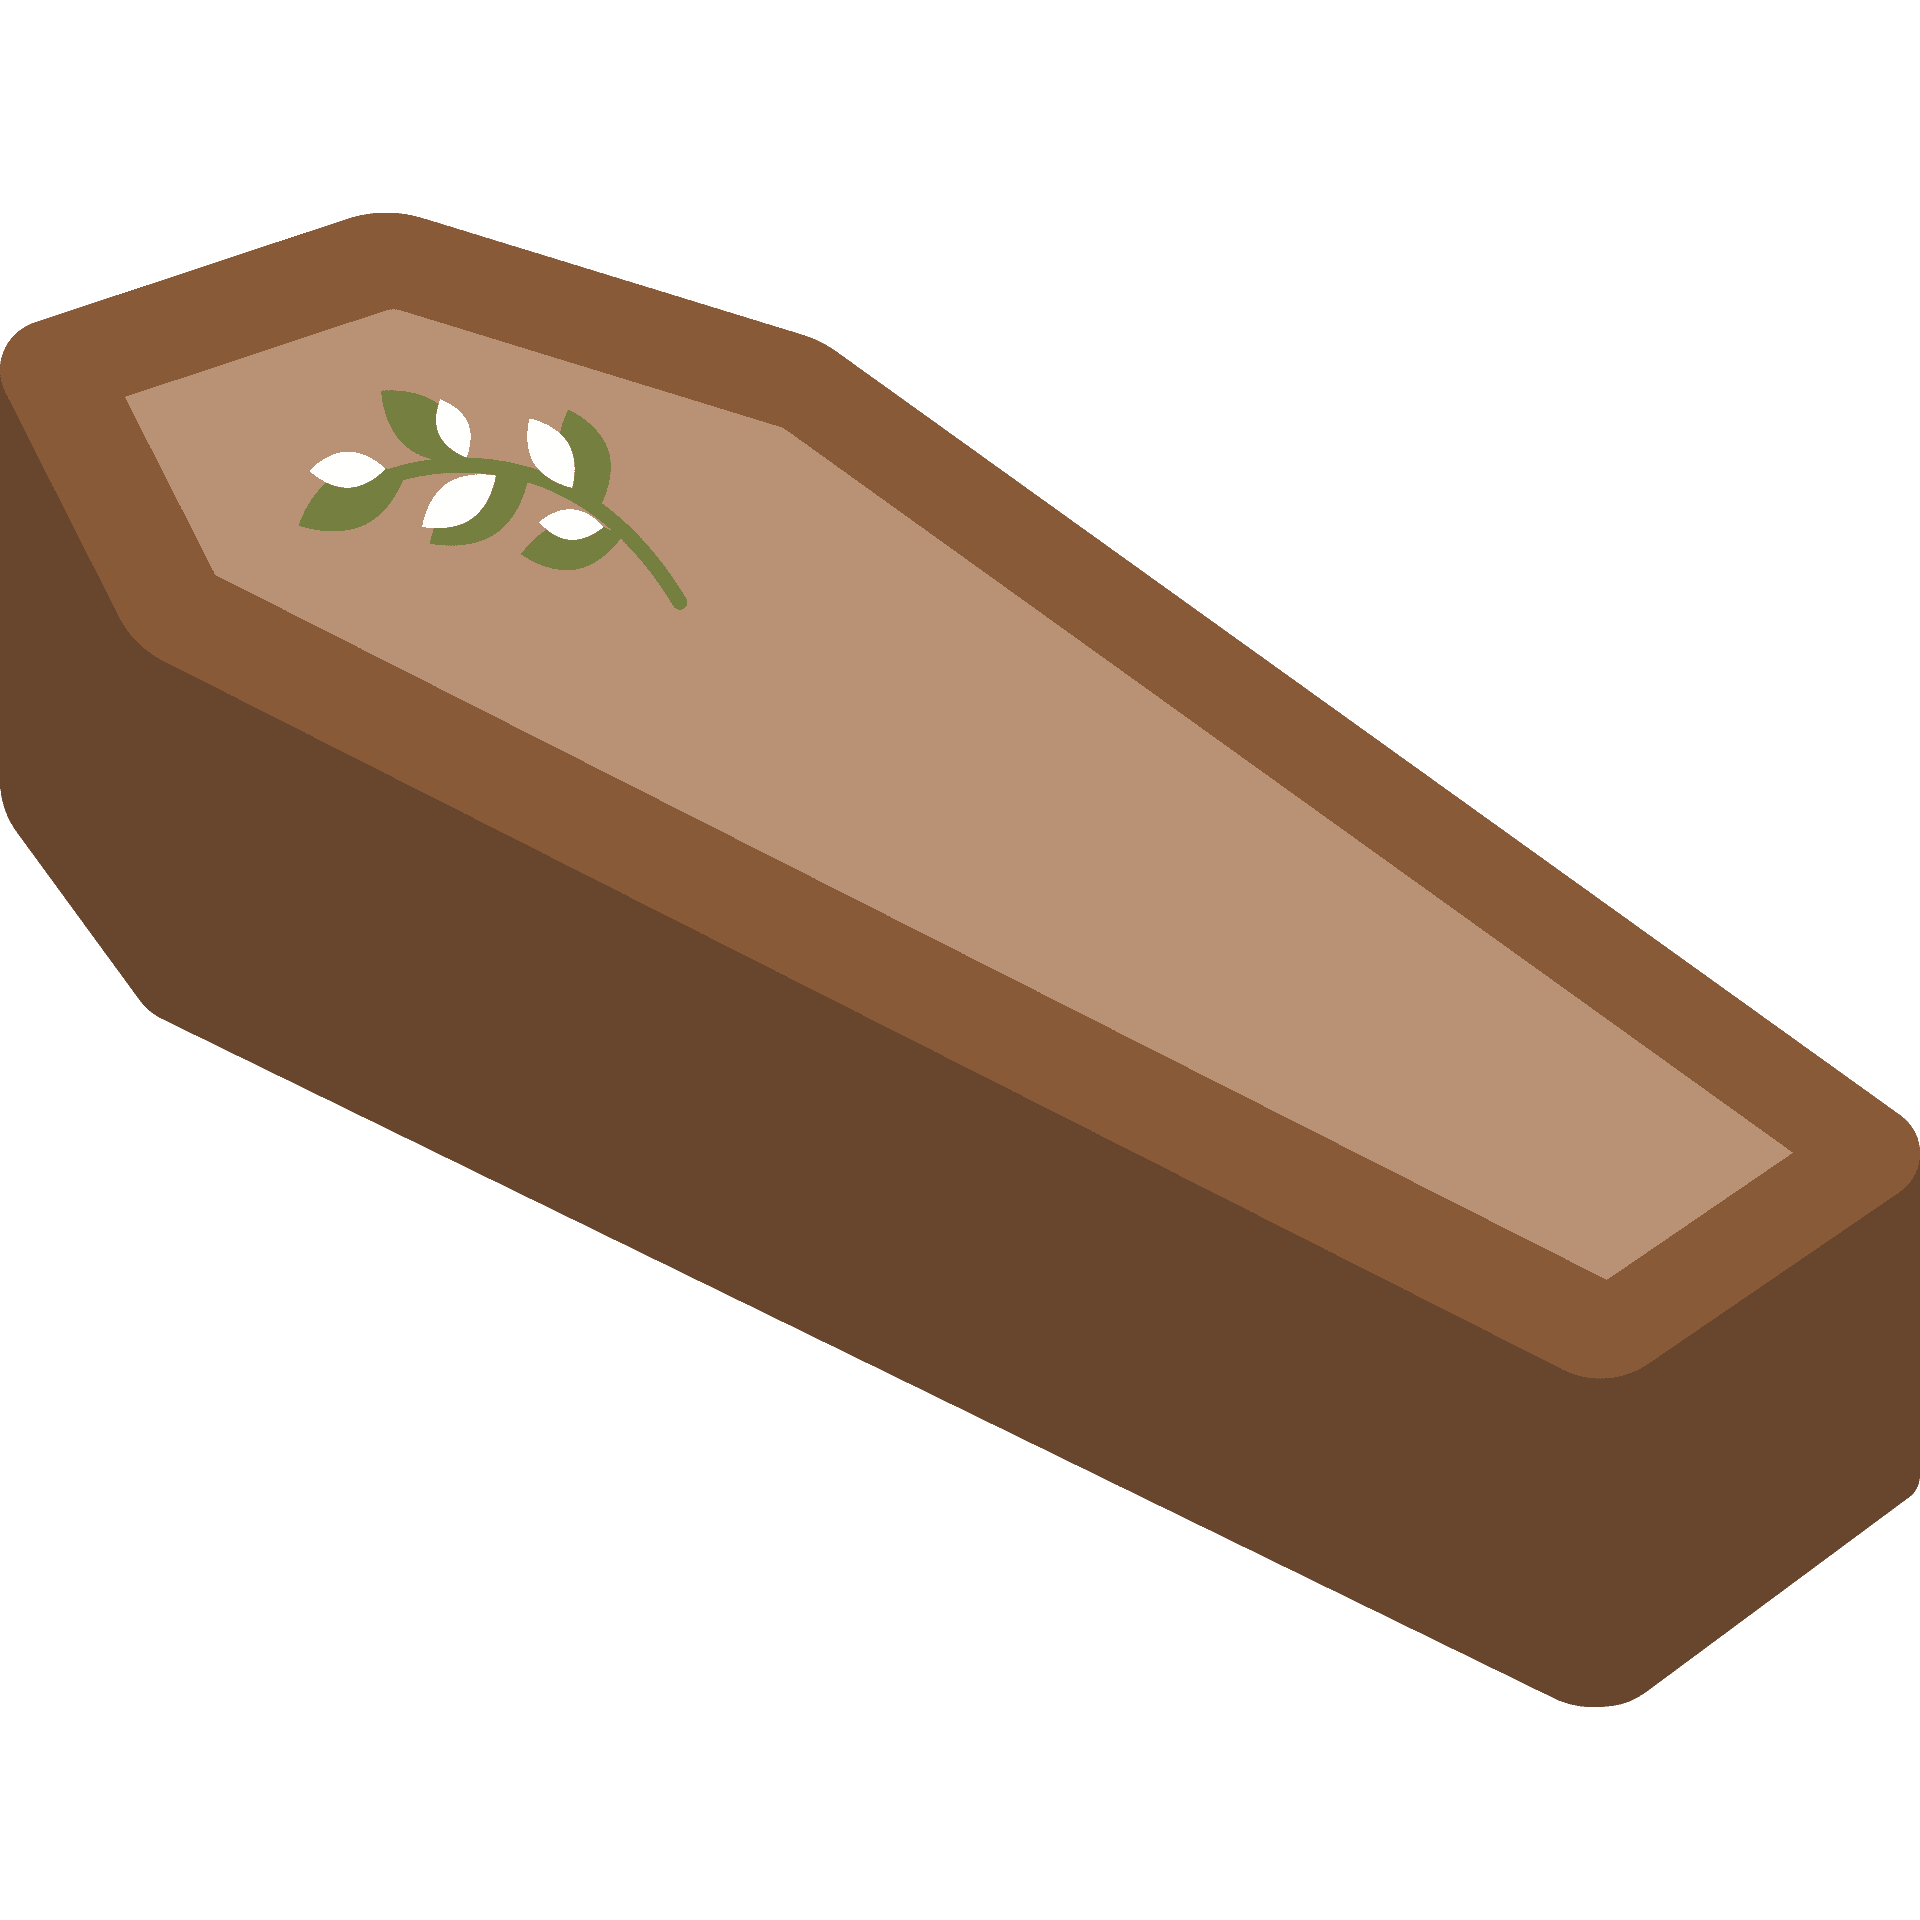 Coffin emoji clipart image